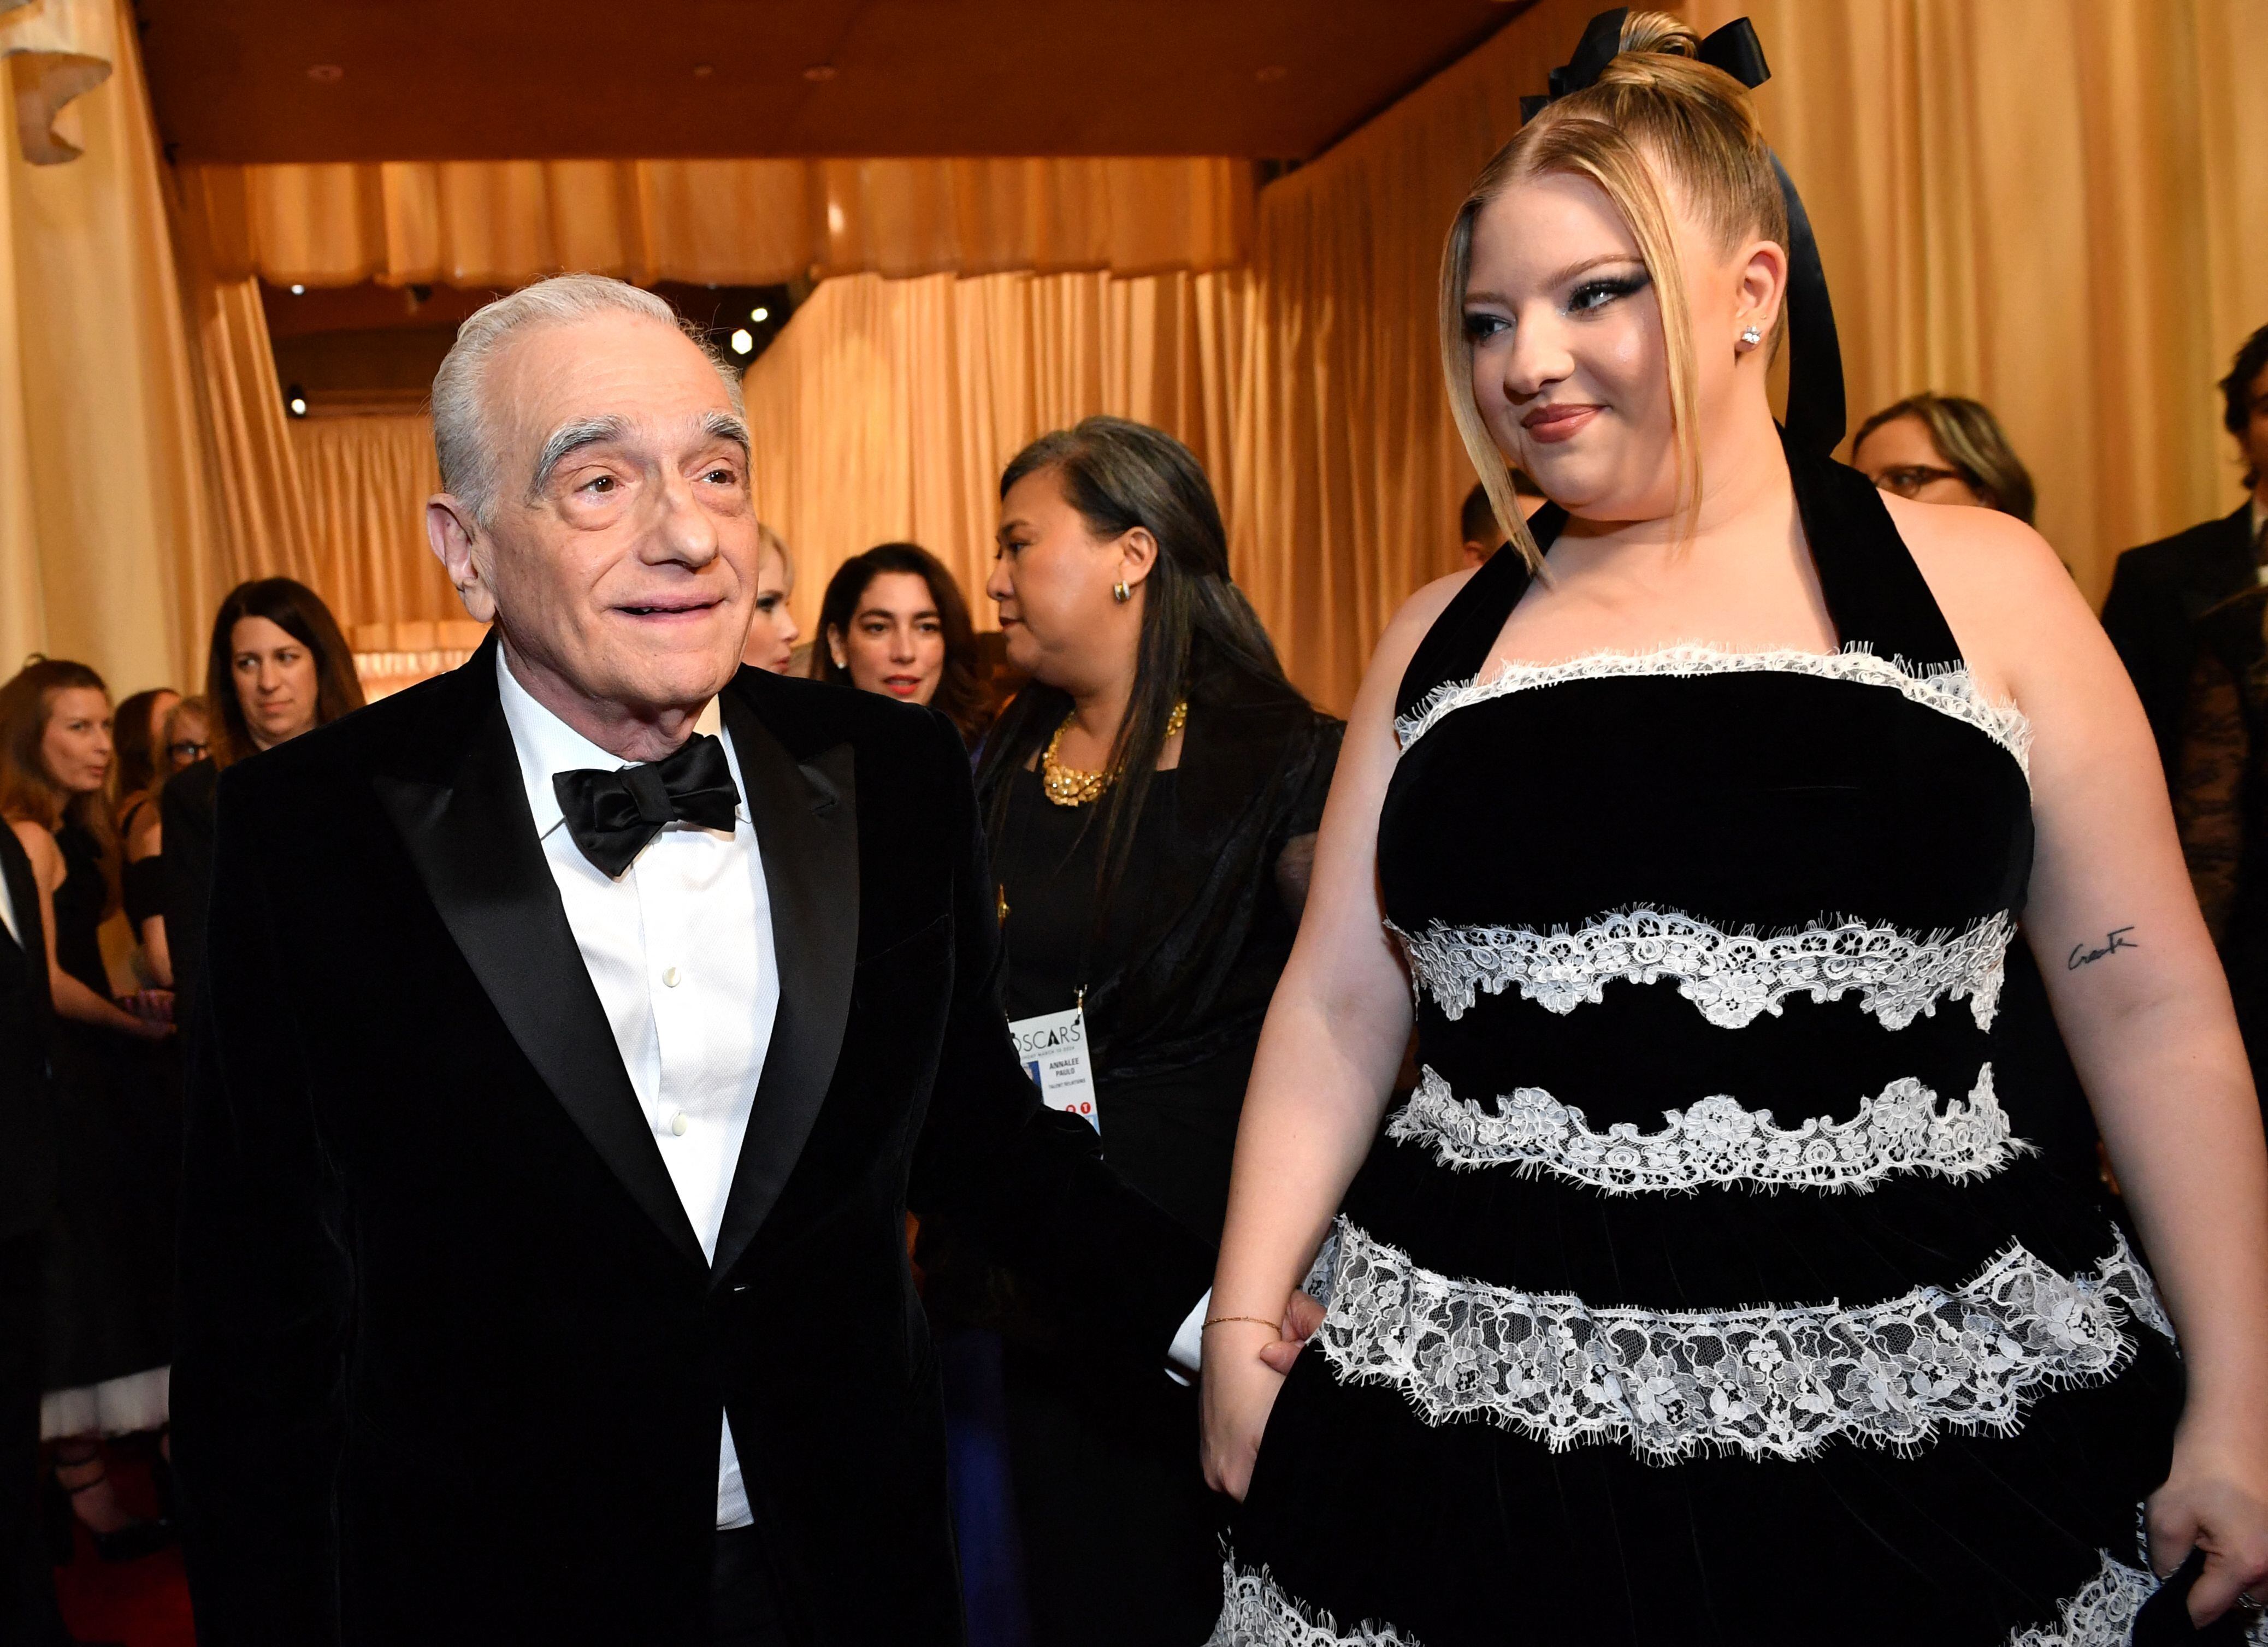 Martin Scorsese desfiló junto a su hija Francesca en la alfombra roja. La joven optó por un vestido negro de tirantes con encaje en color blanco, que se combinaba con el traje de su papá. 